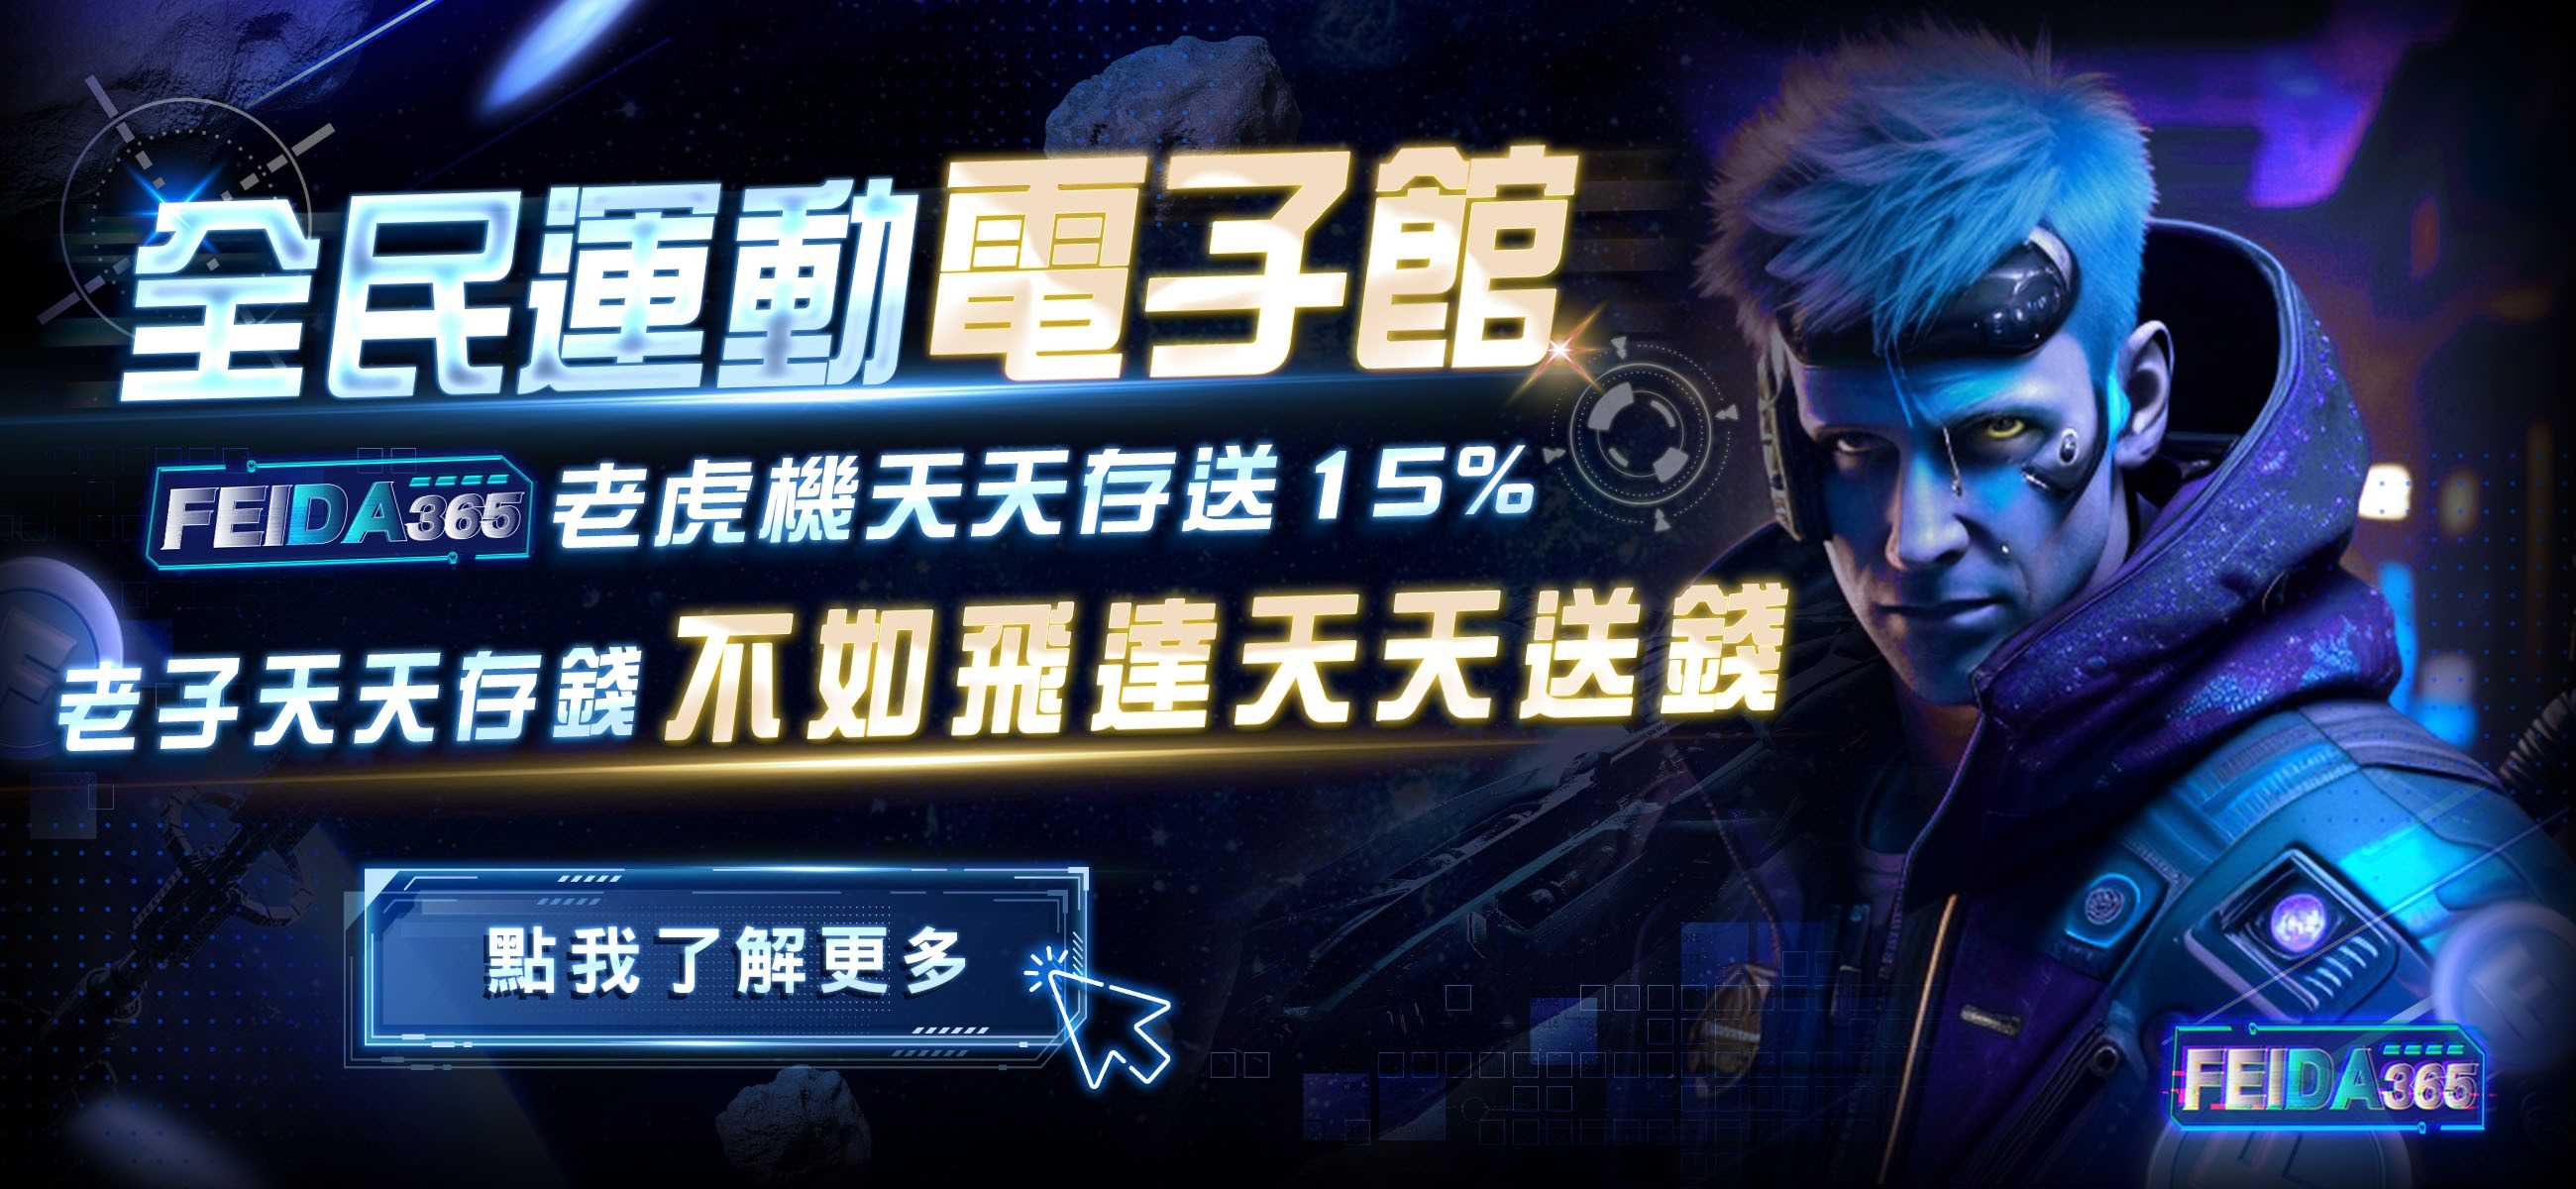 飛達娛樂城全民運動電子館，天天存送15%